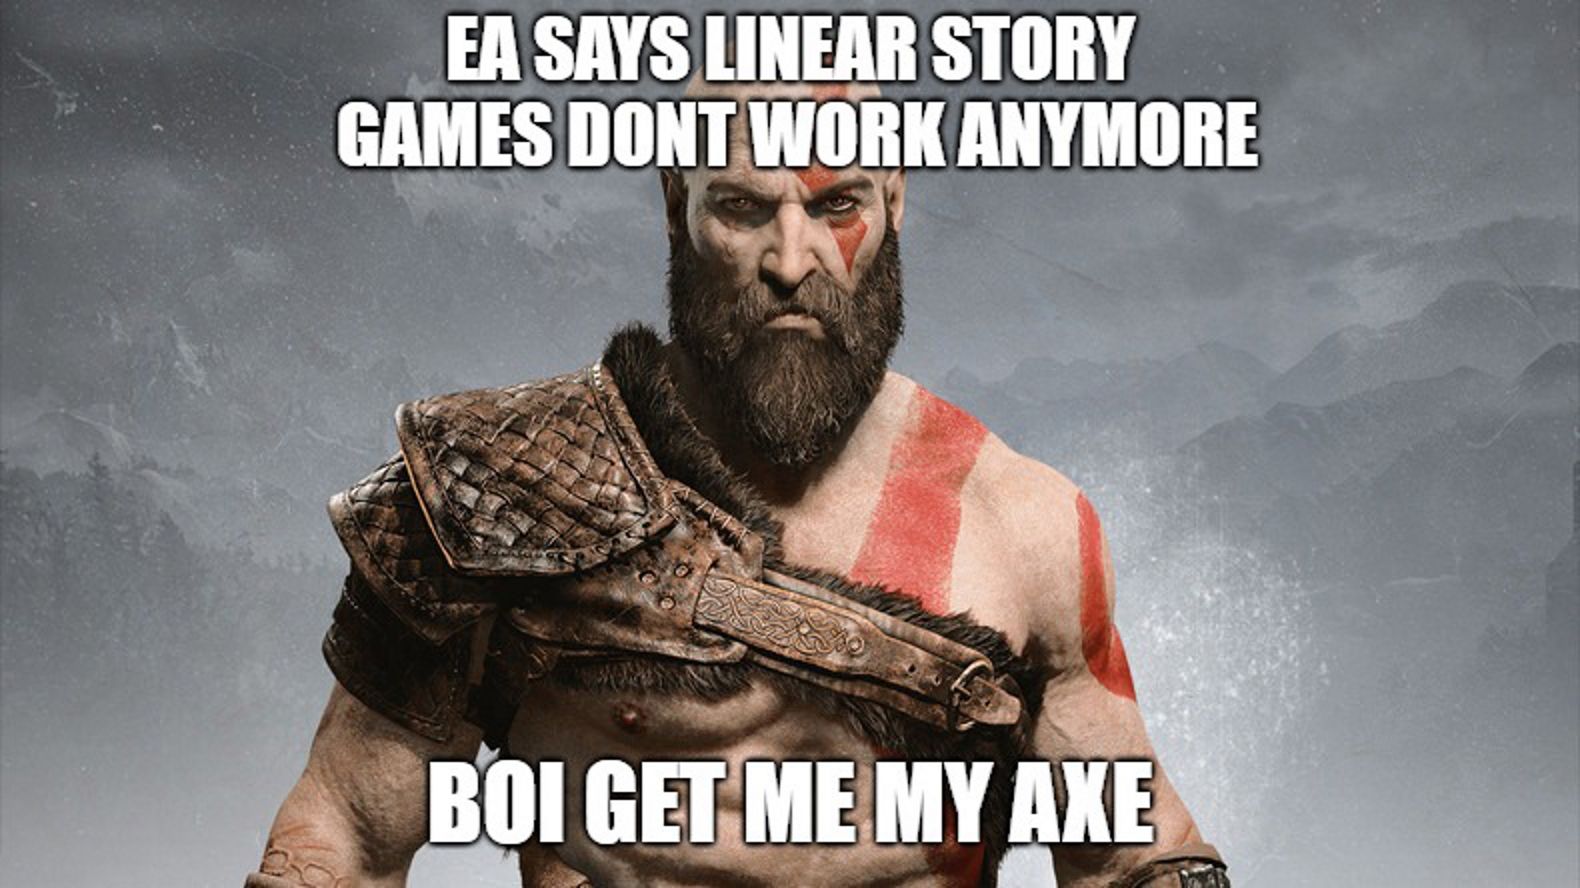 EA is wrong again